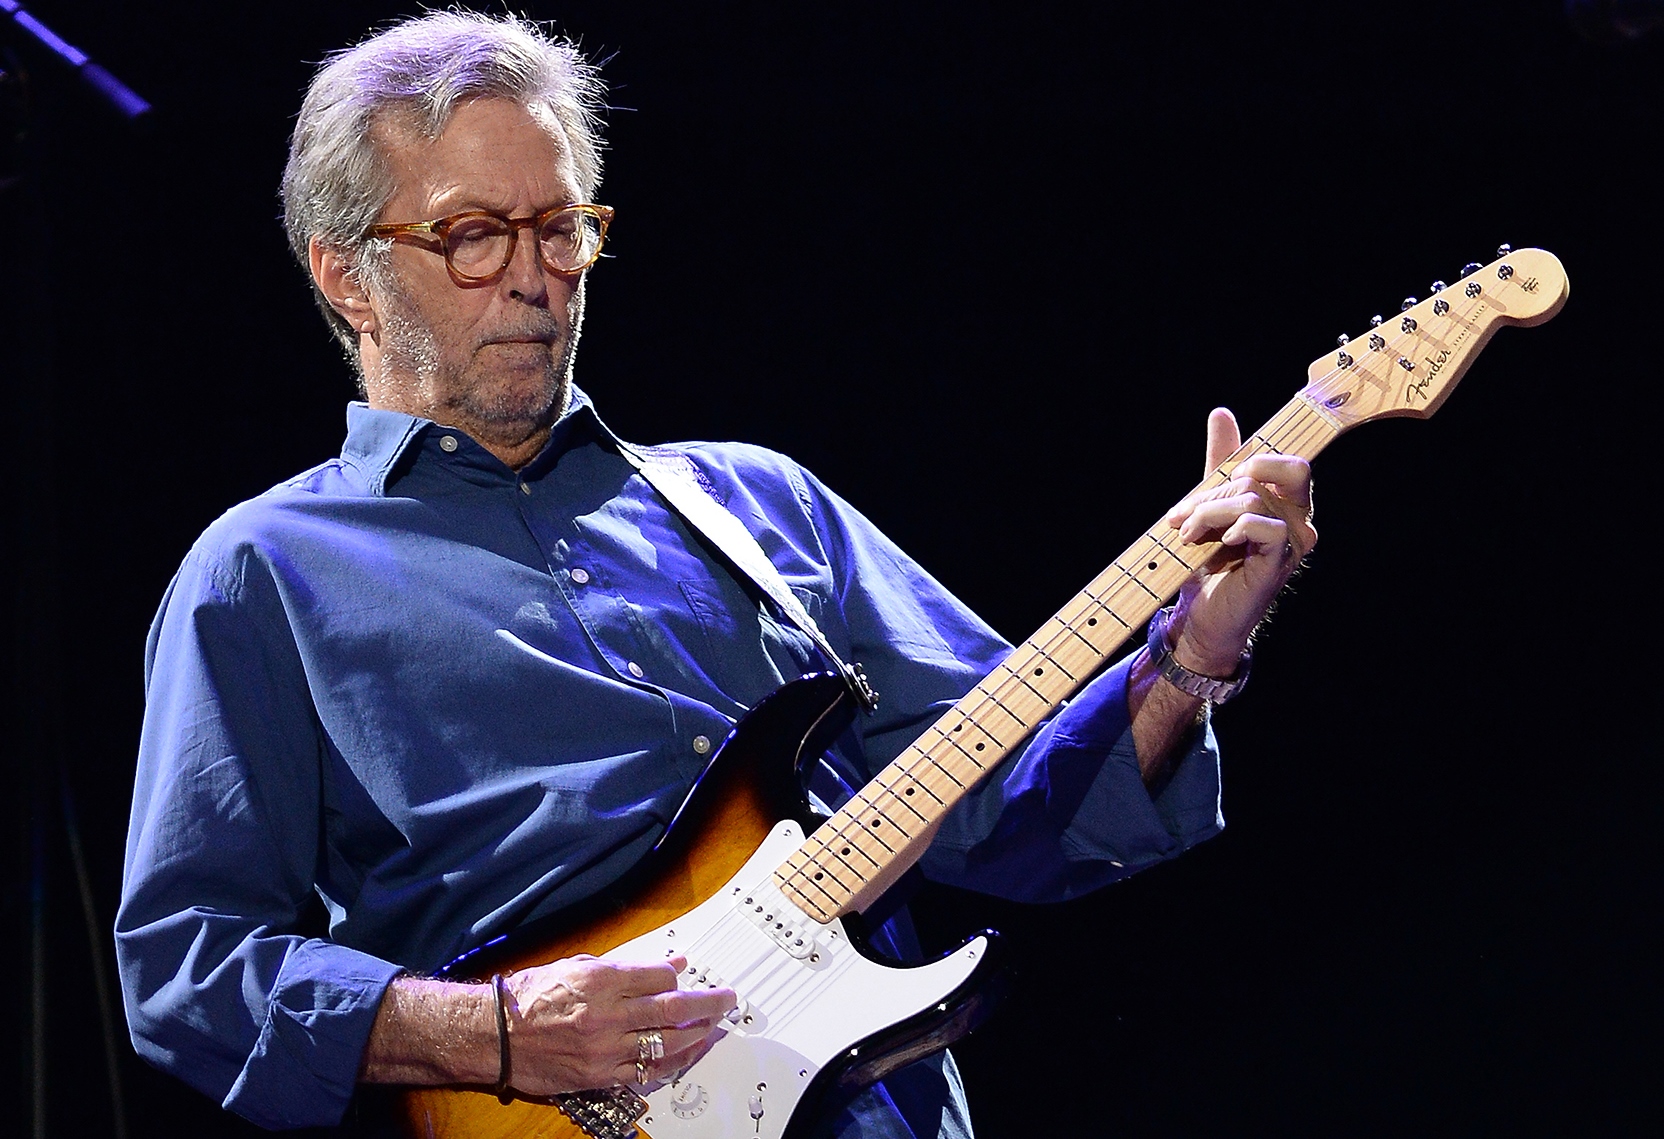 Lanzamos concurso con Eric Clapton: Live at the Albert Hall